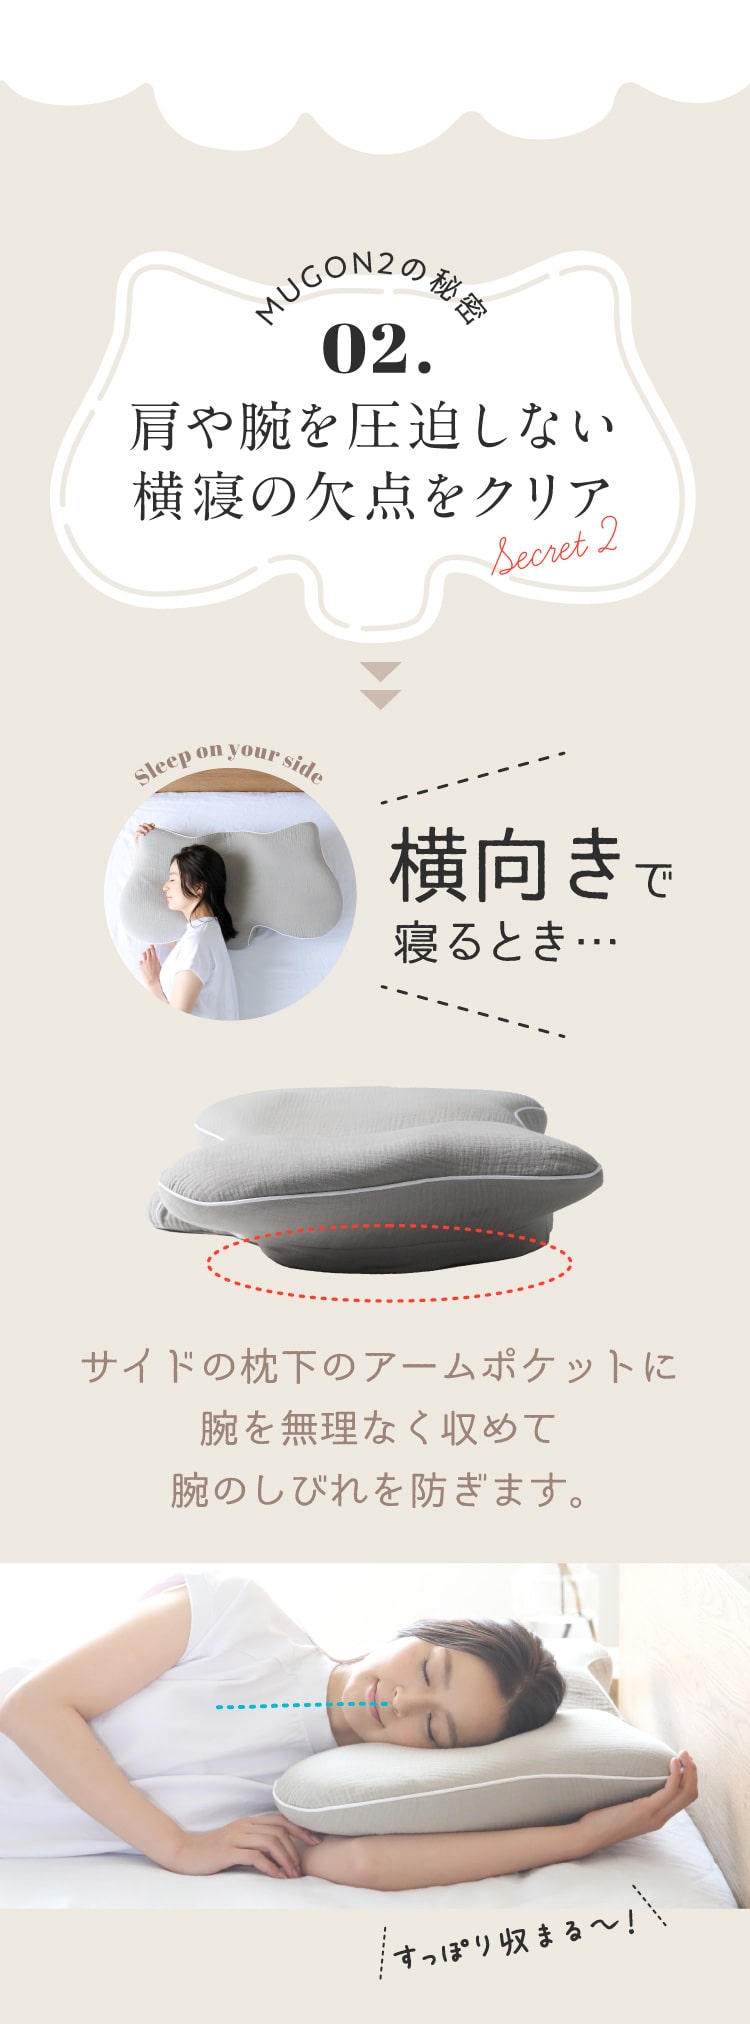 最高の品質 SU-ZI 横寝枕 MUGON 2 枕 - gastrolife.net